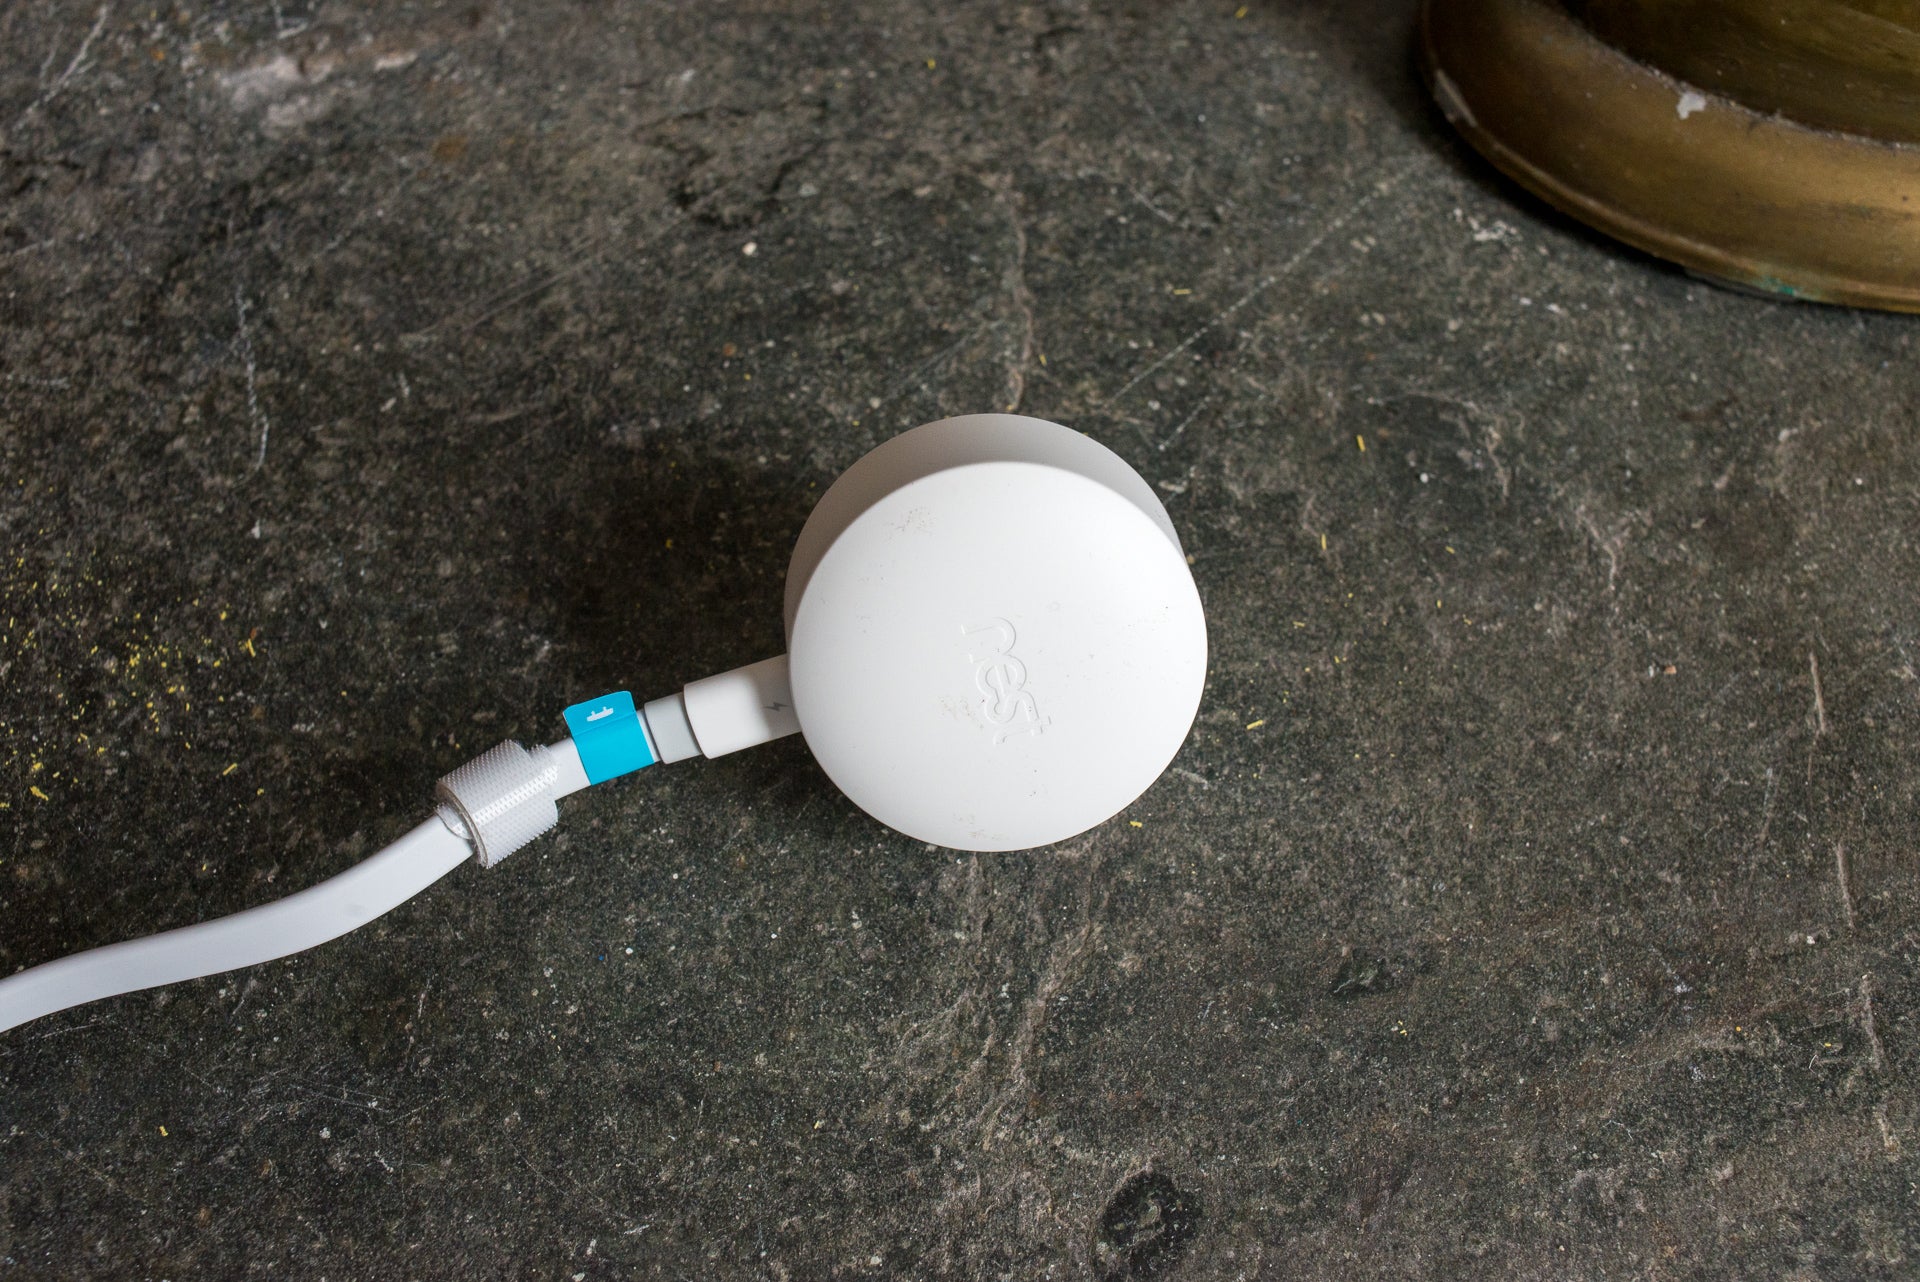 Nest Cam IQ Outdoor power adapter on floor.